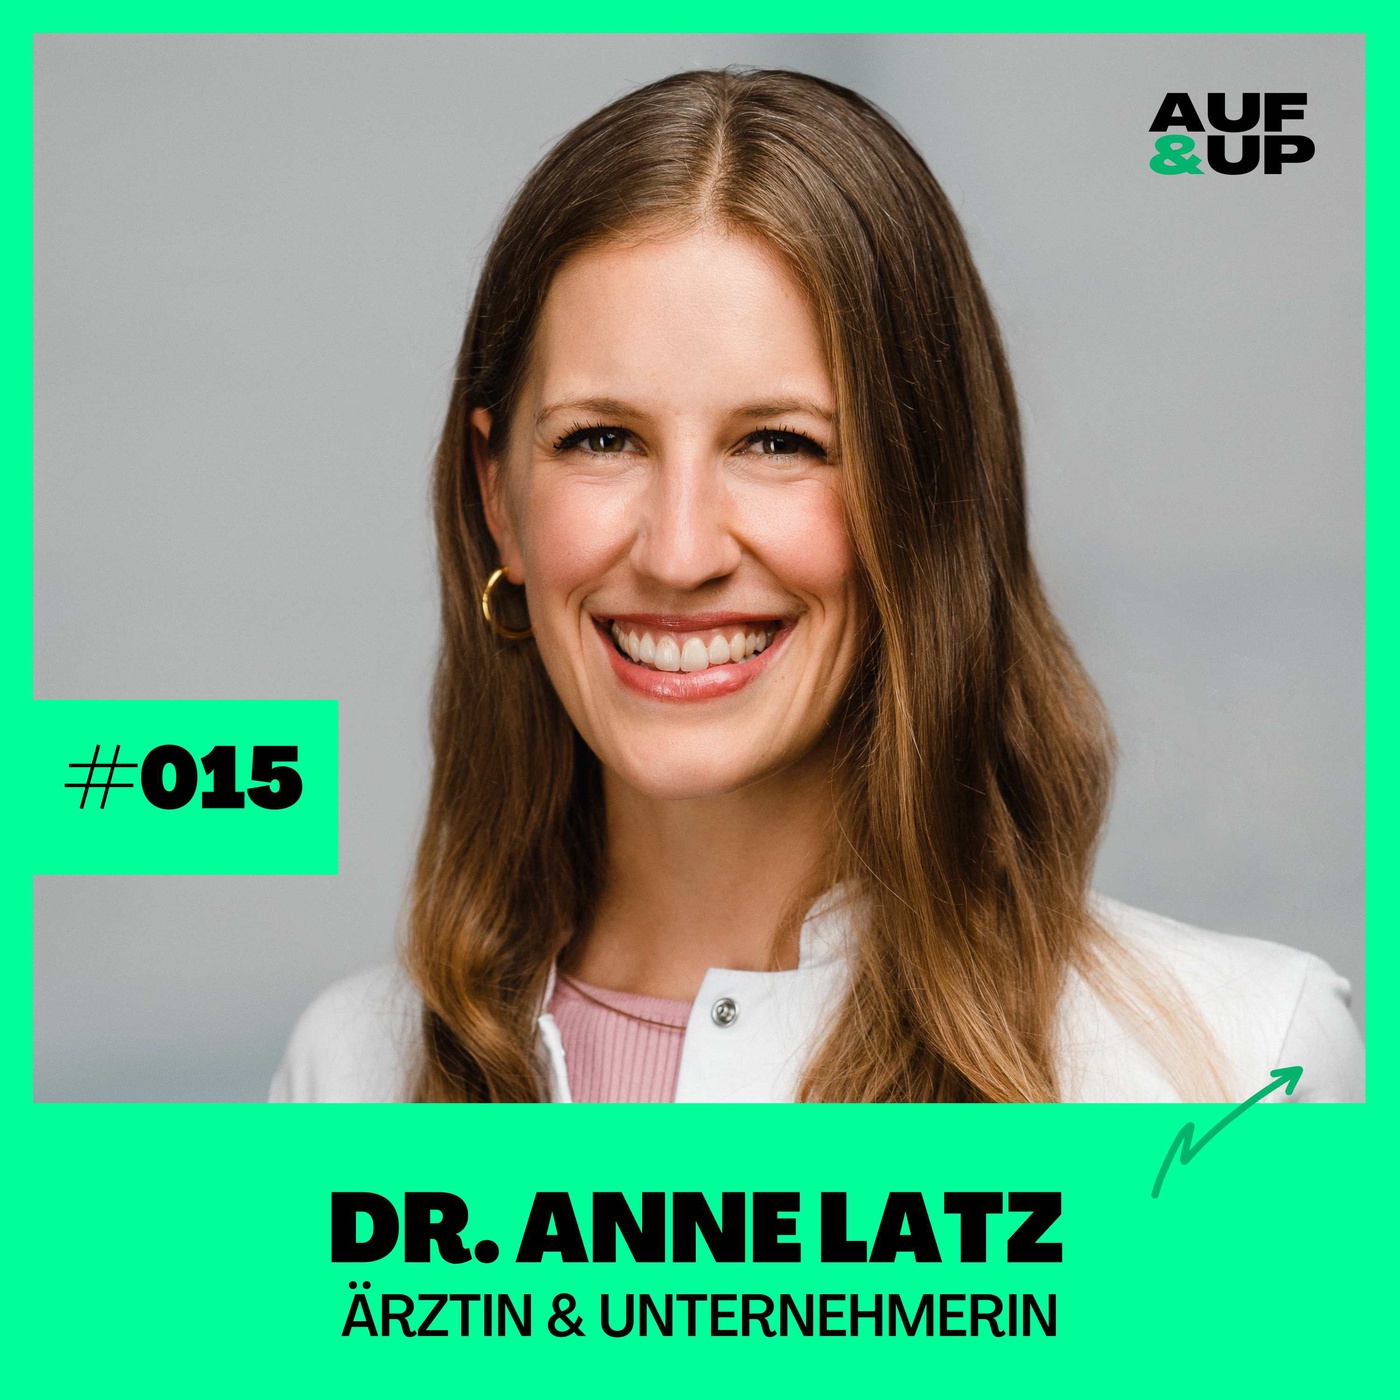 Ärztin & Unternehmerin Dr. Anne Latz - Blutzucker strategisch managen | A&U #015